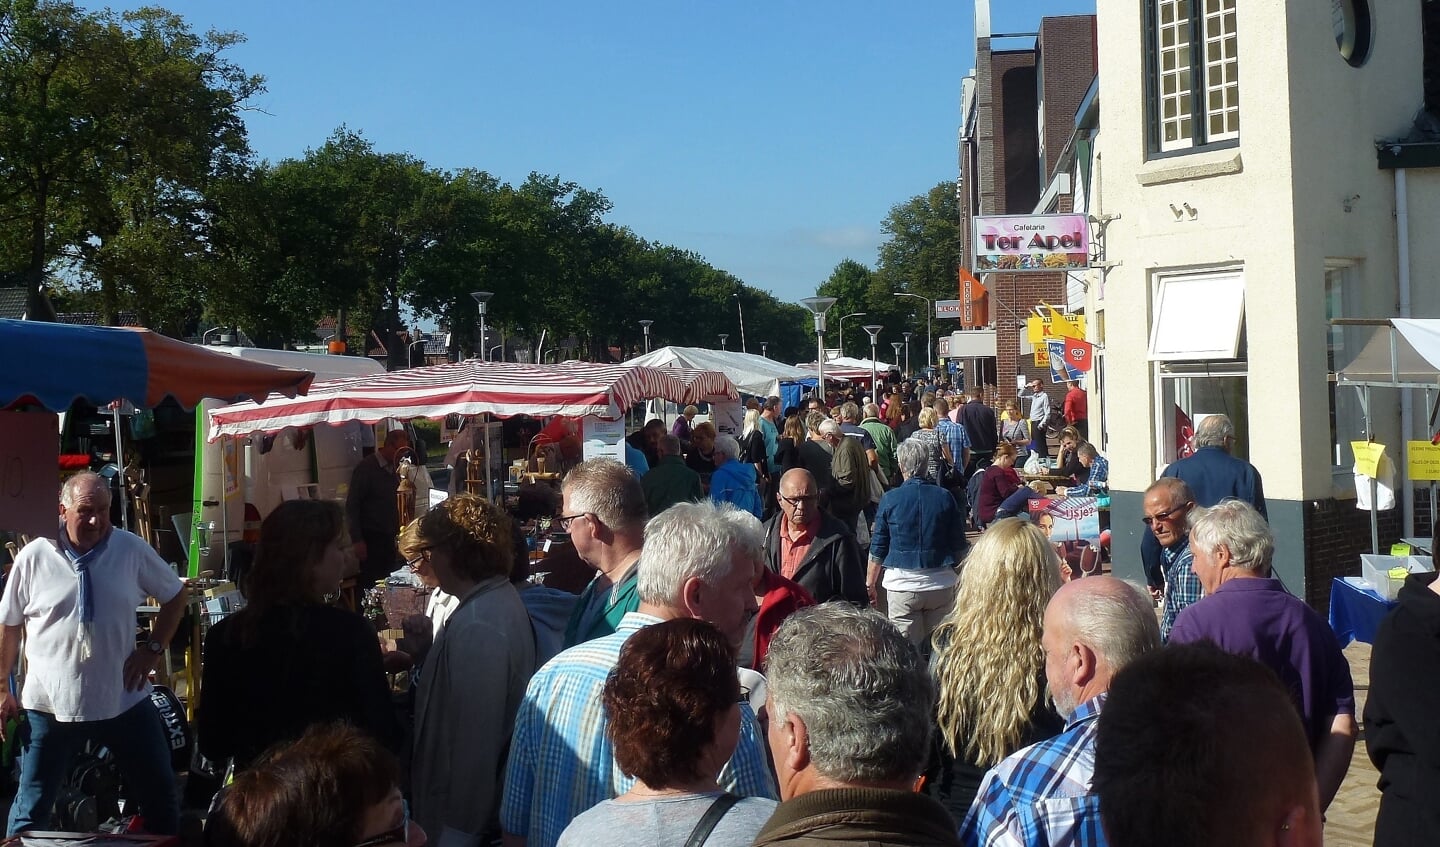 Gezellige drukte tijdens een eerdere editie van de Boeskoolmarkt in Ter Apel. (foto: Jaarmarktcommissie Boeskoolmarkt)